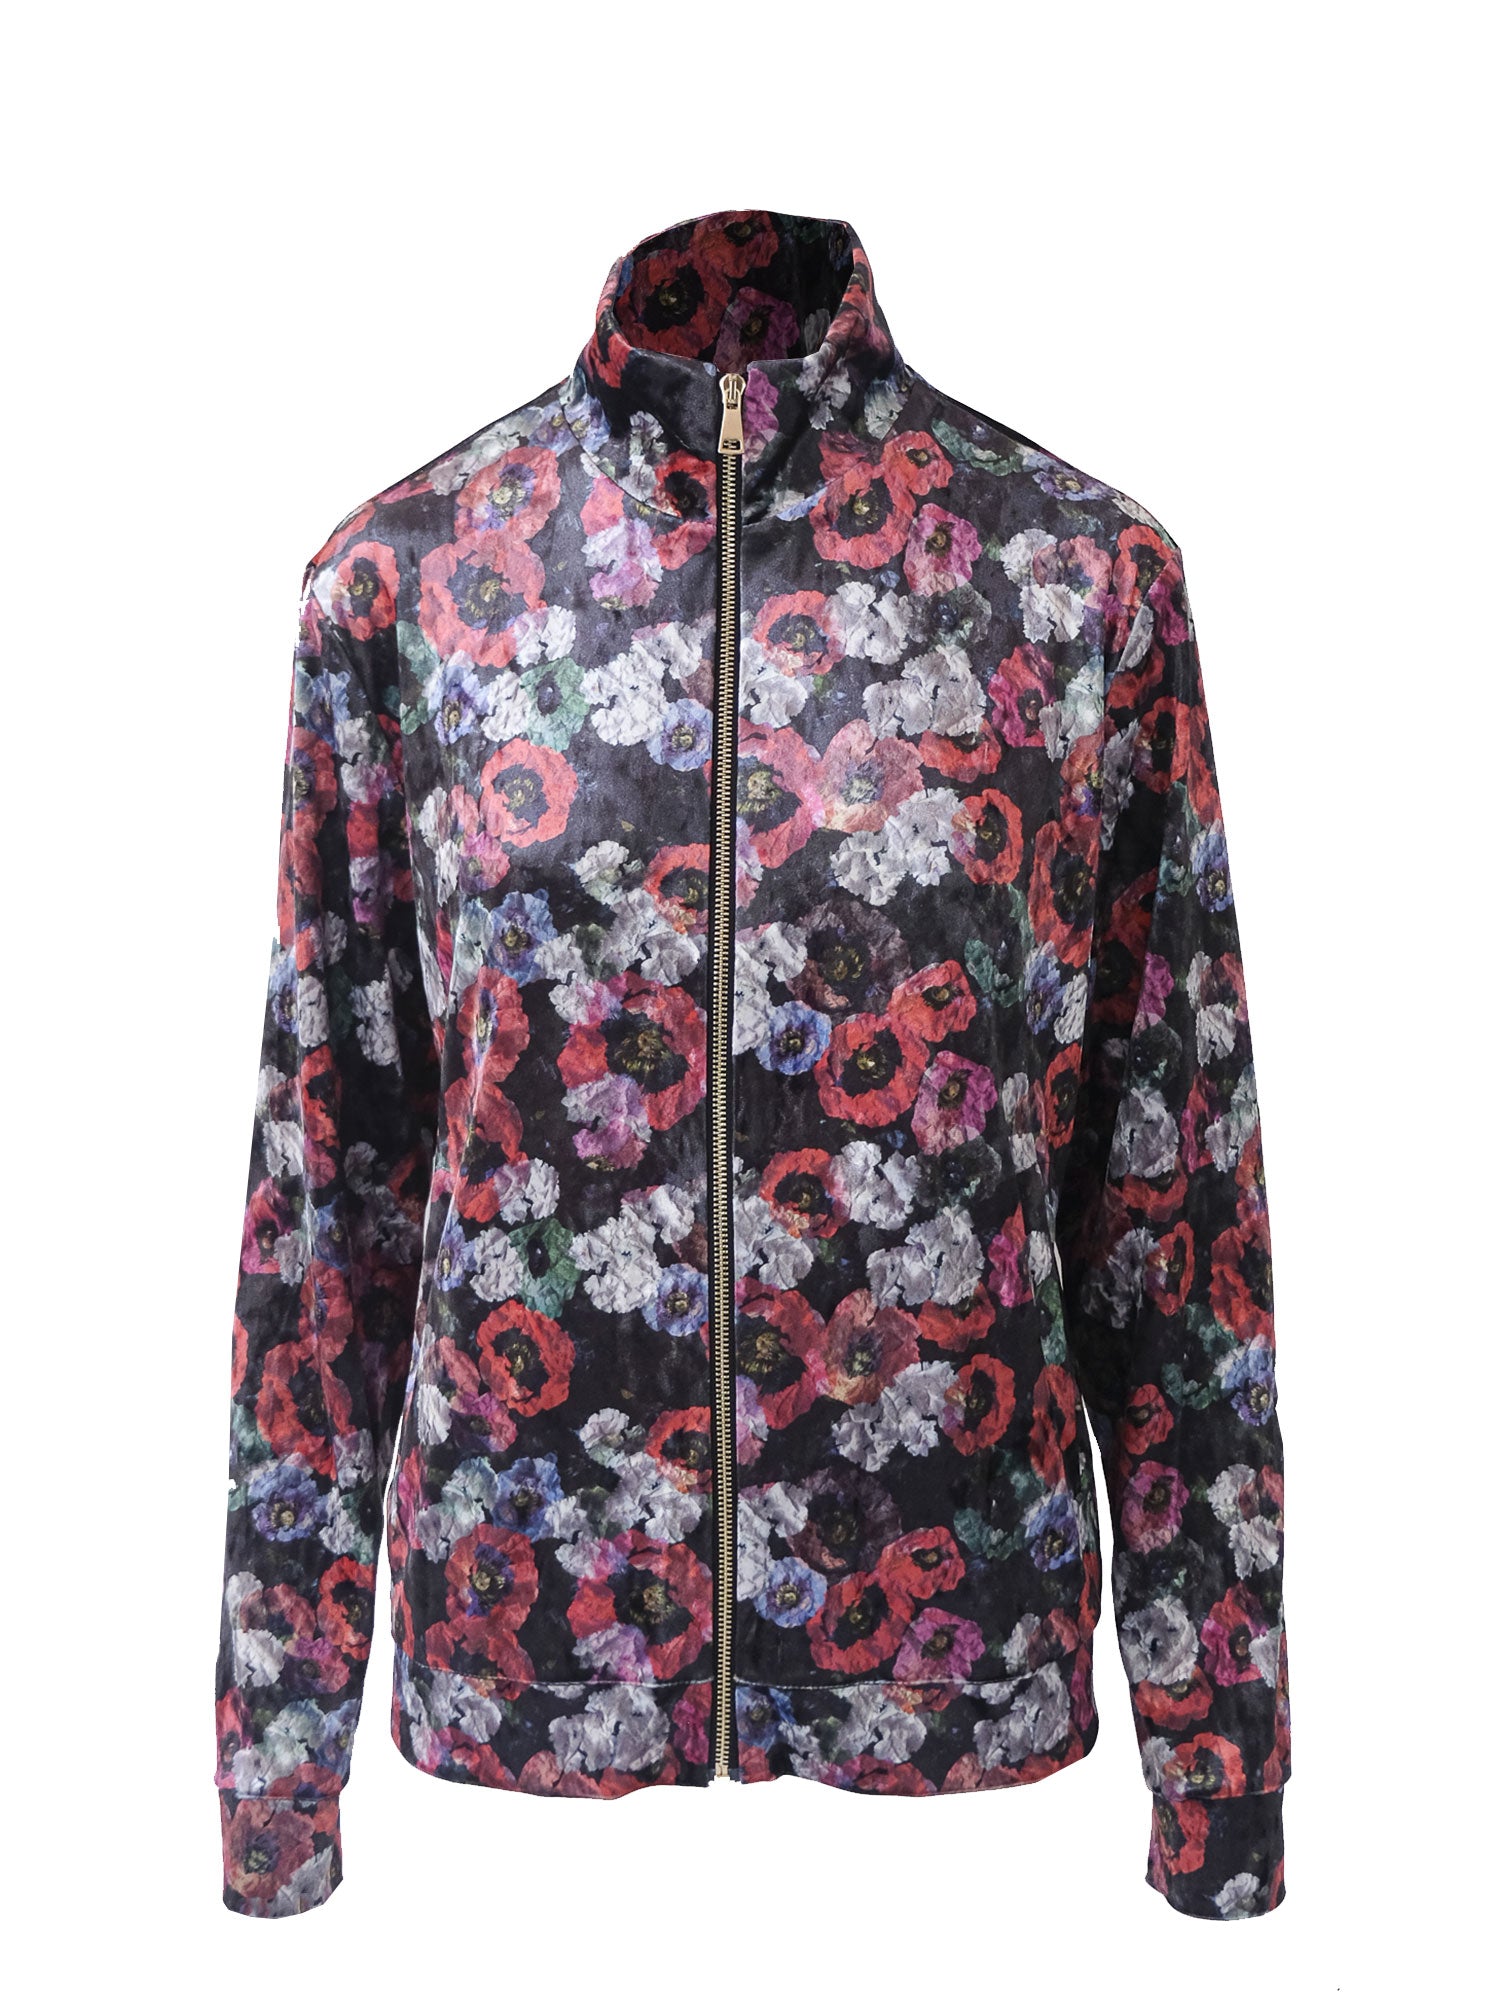 REINE - floral print hammered chenille jacket